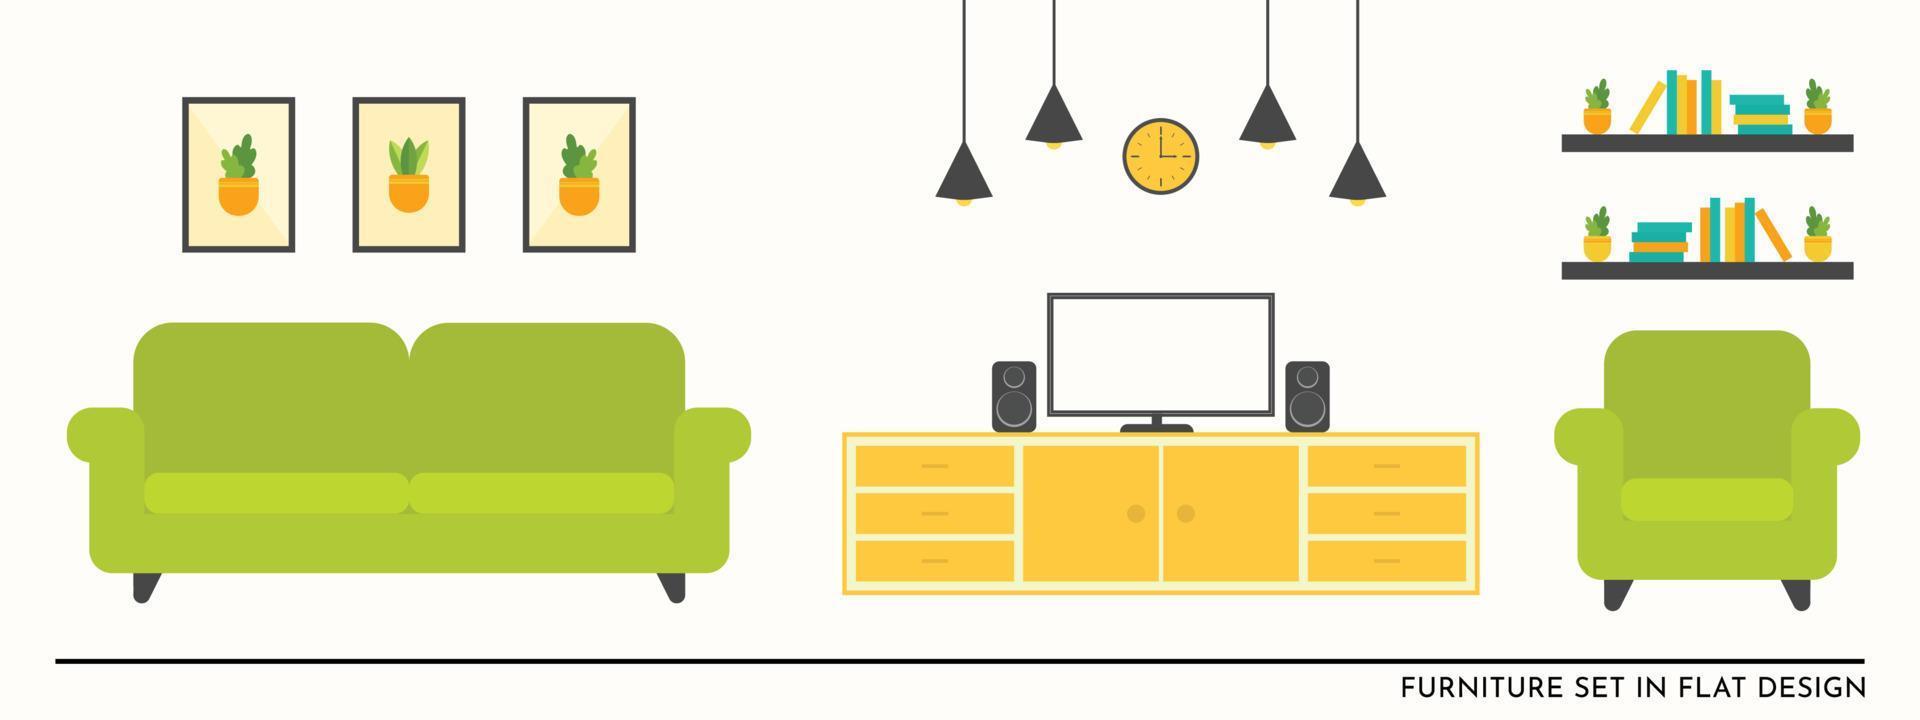 flacher möbelsatzvektor für wohnzimmerillustrationsdesign im grünen sofa und im gelben tisch vektor